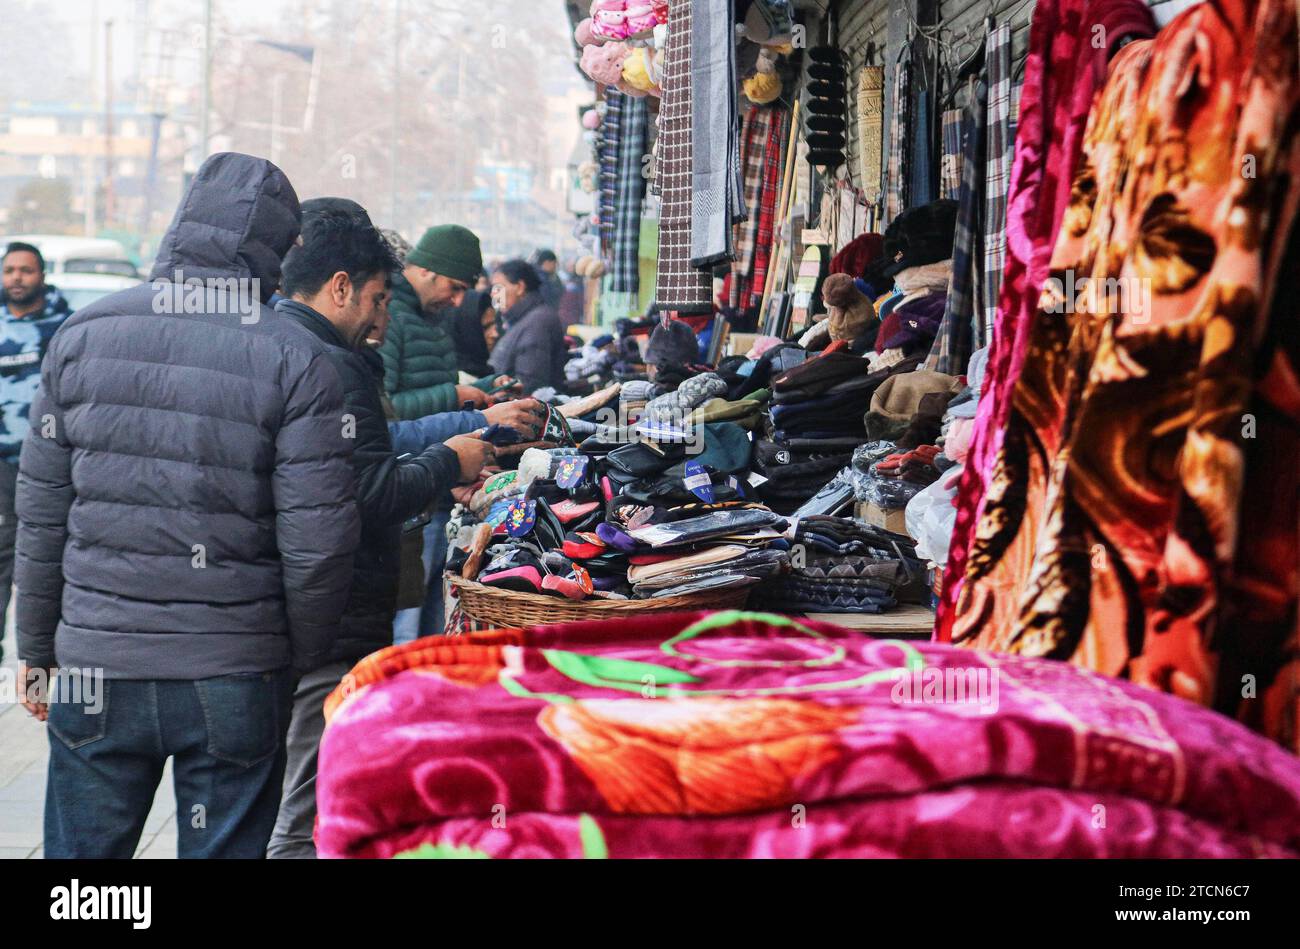 Vendita di abbigliamento invernale durante la stagione invernale 13 dicembre 2023, Srinagar Kashmir, India: La gente acquista cappellini invernali e altri articoli presso un mercato a Srinagar. Con l'arrivo dell'inverno, i Kashmiris ordinari iniziano a prepararsi per il tempo duro, acquistando maglioni, giacche e altri vestiti caldi. Srinagar Kashmir India Copyright: XFirdousxNazirxxEyepixxGroupx Foto Stock